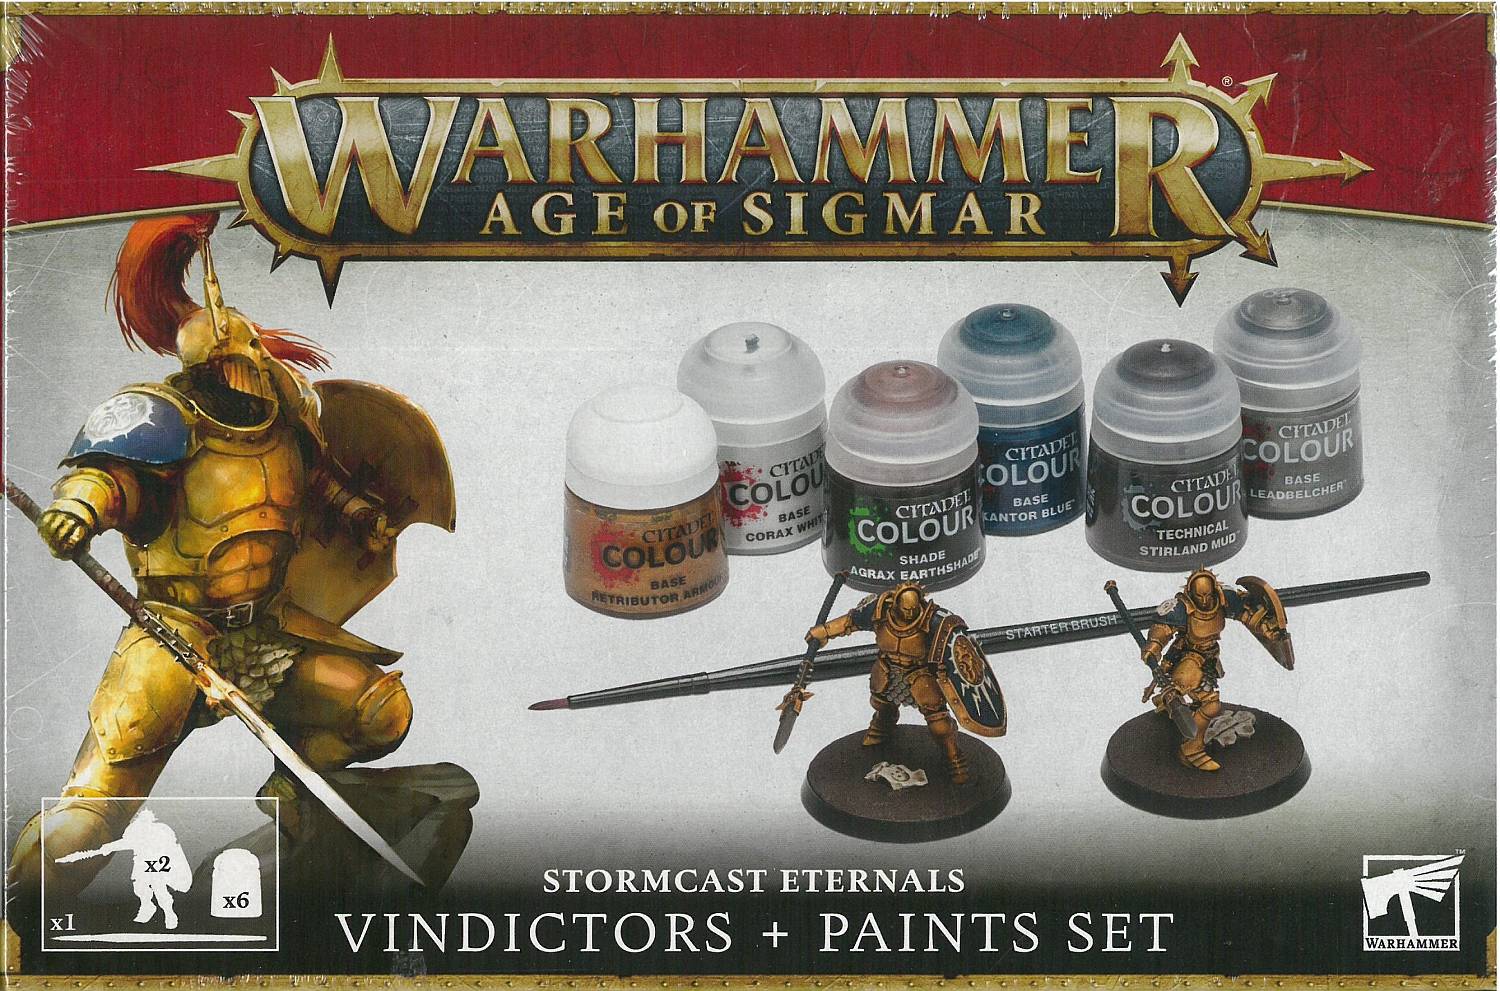 Stormcast Eternals Vindictors + Paints Set